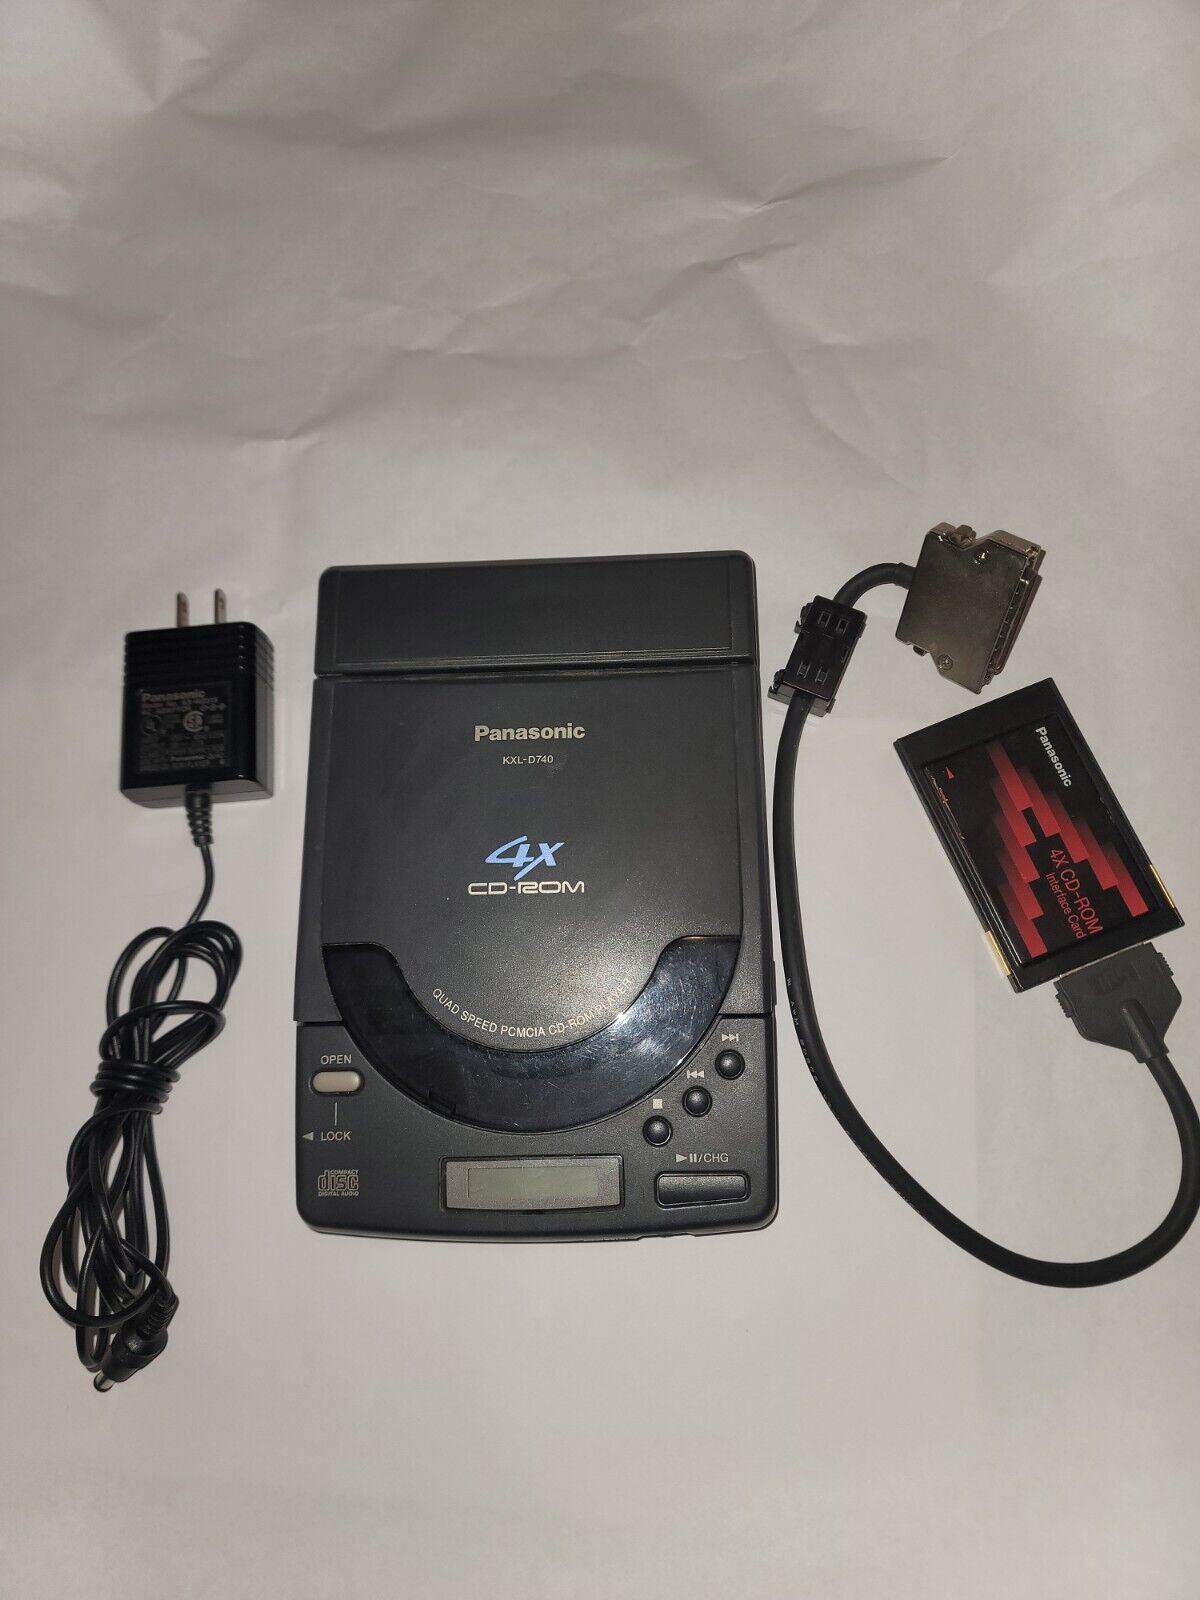 Panasonic KXL-D740 Multimedia Quad Speed 4X CD-ROM Sound Player W/Card. READ 